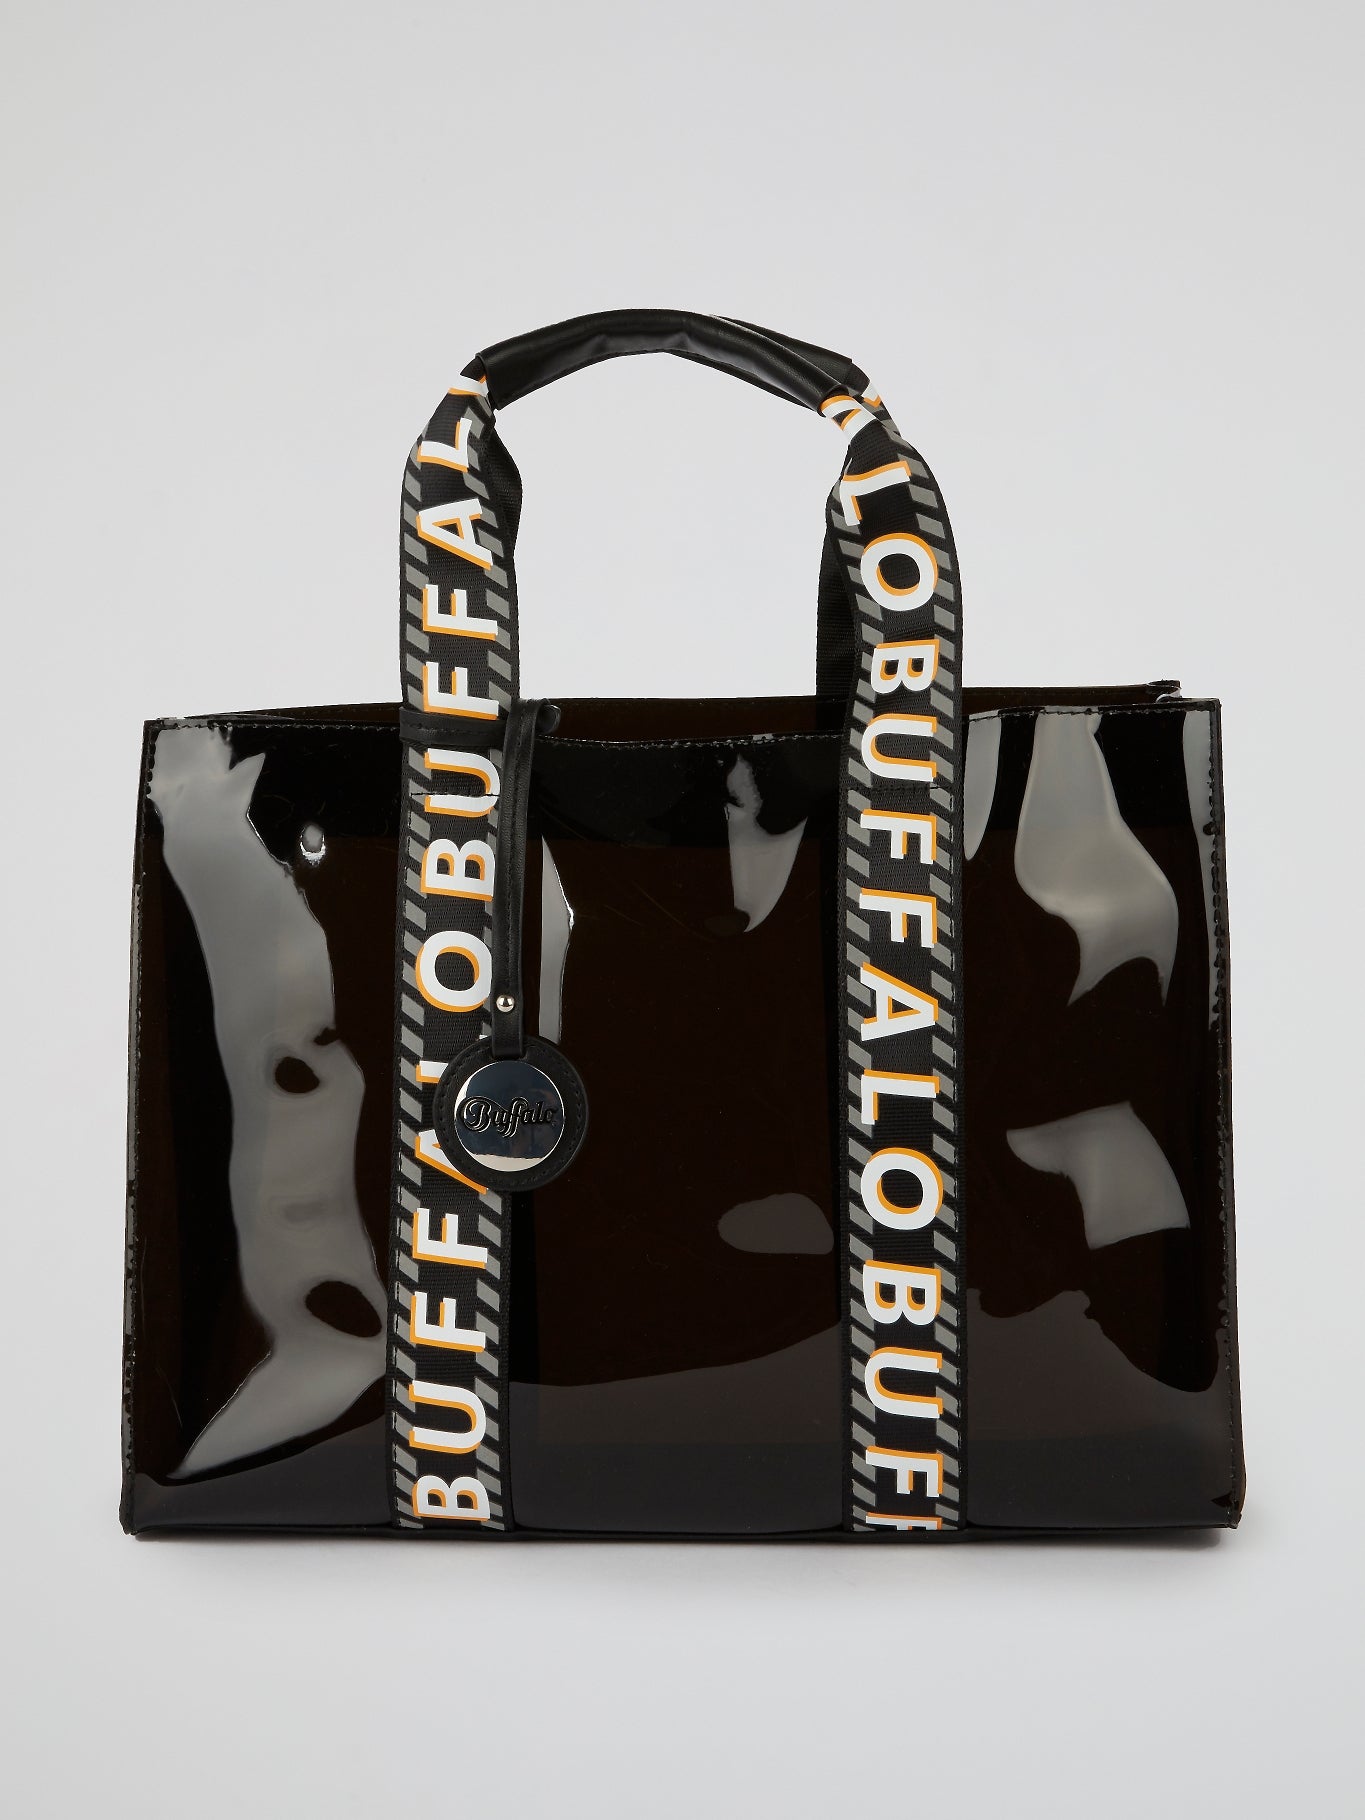 Haya Black Patent Leather Tote Bag